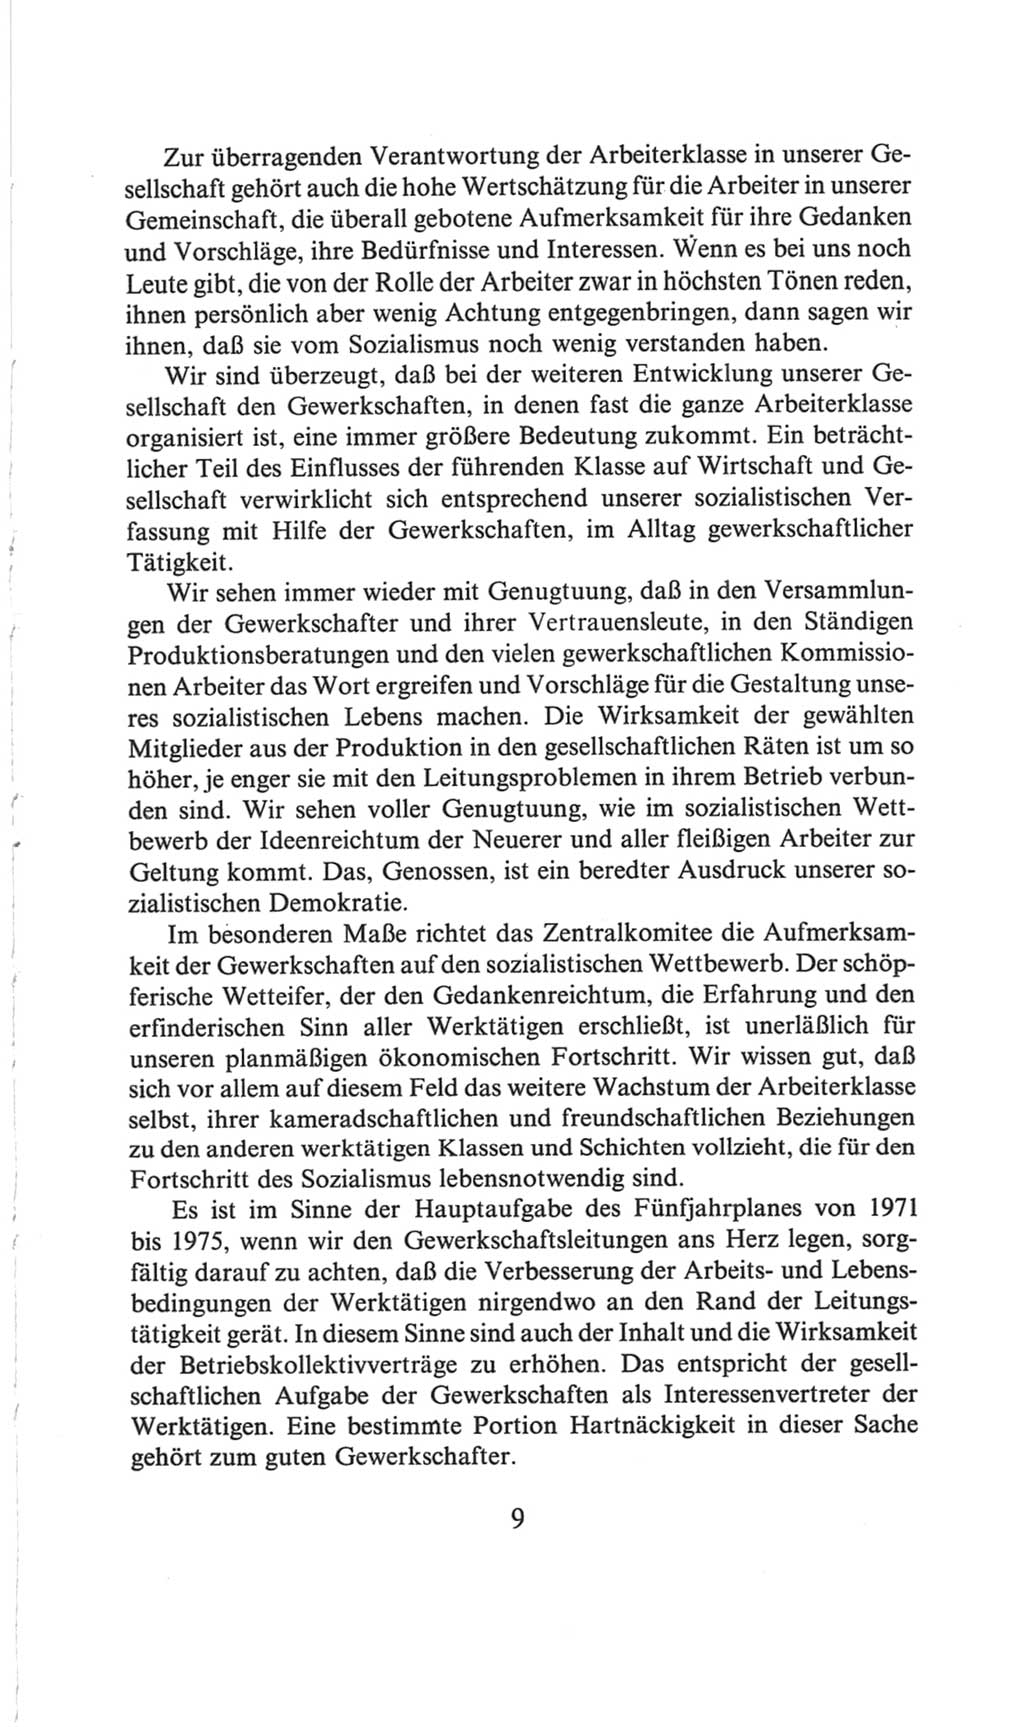 Volkskammer (VK) der Deutschen Demokratischen Republik (DDR), 6. Wahlperiode 1971-1976, Seite 9 (VK. DDR 6. WP. 1971-1976, S. 9)